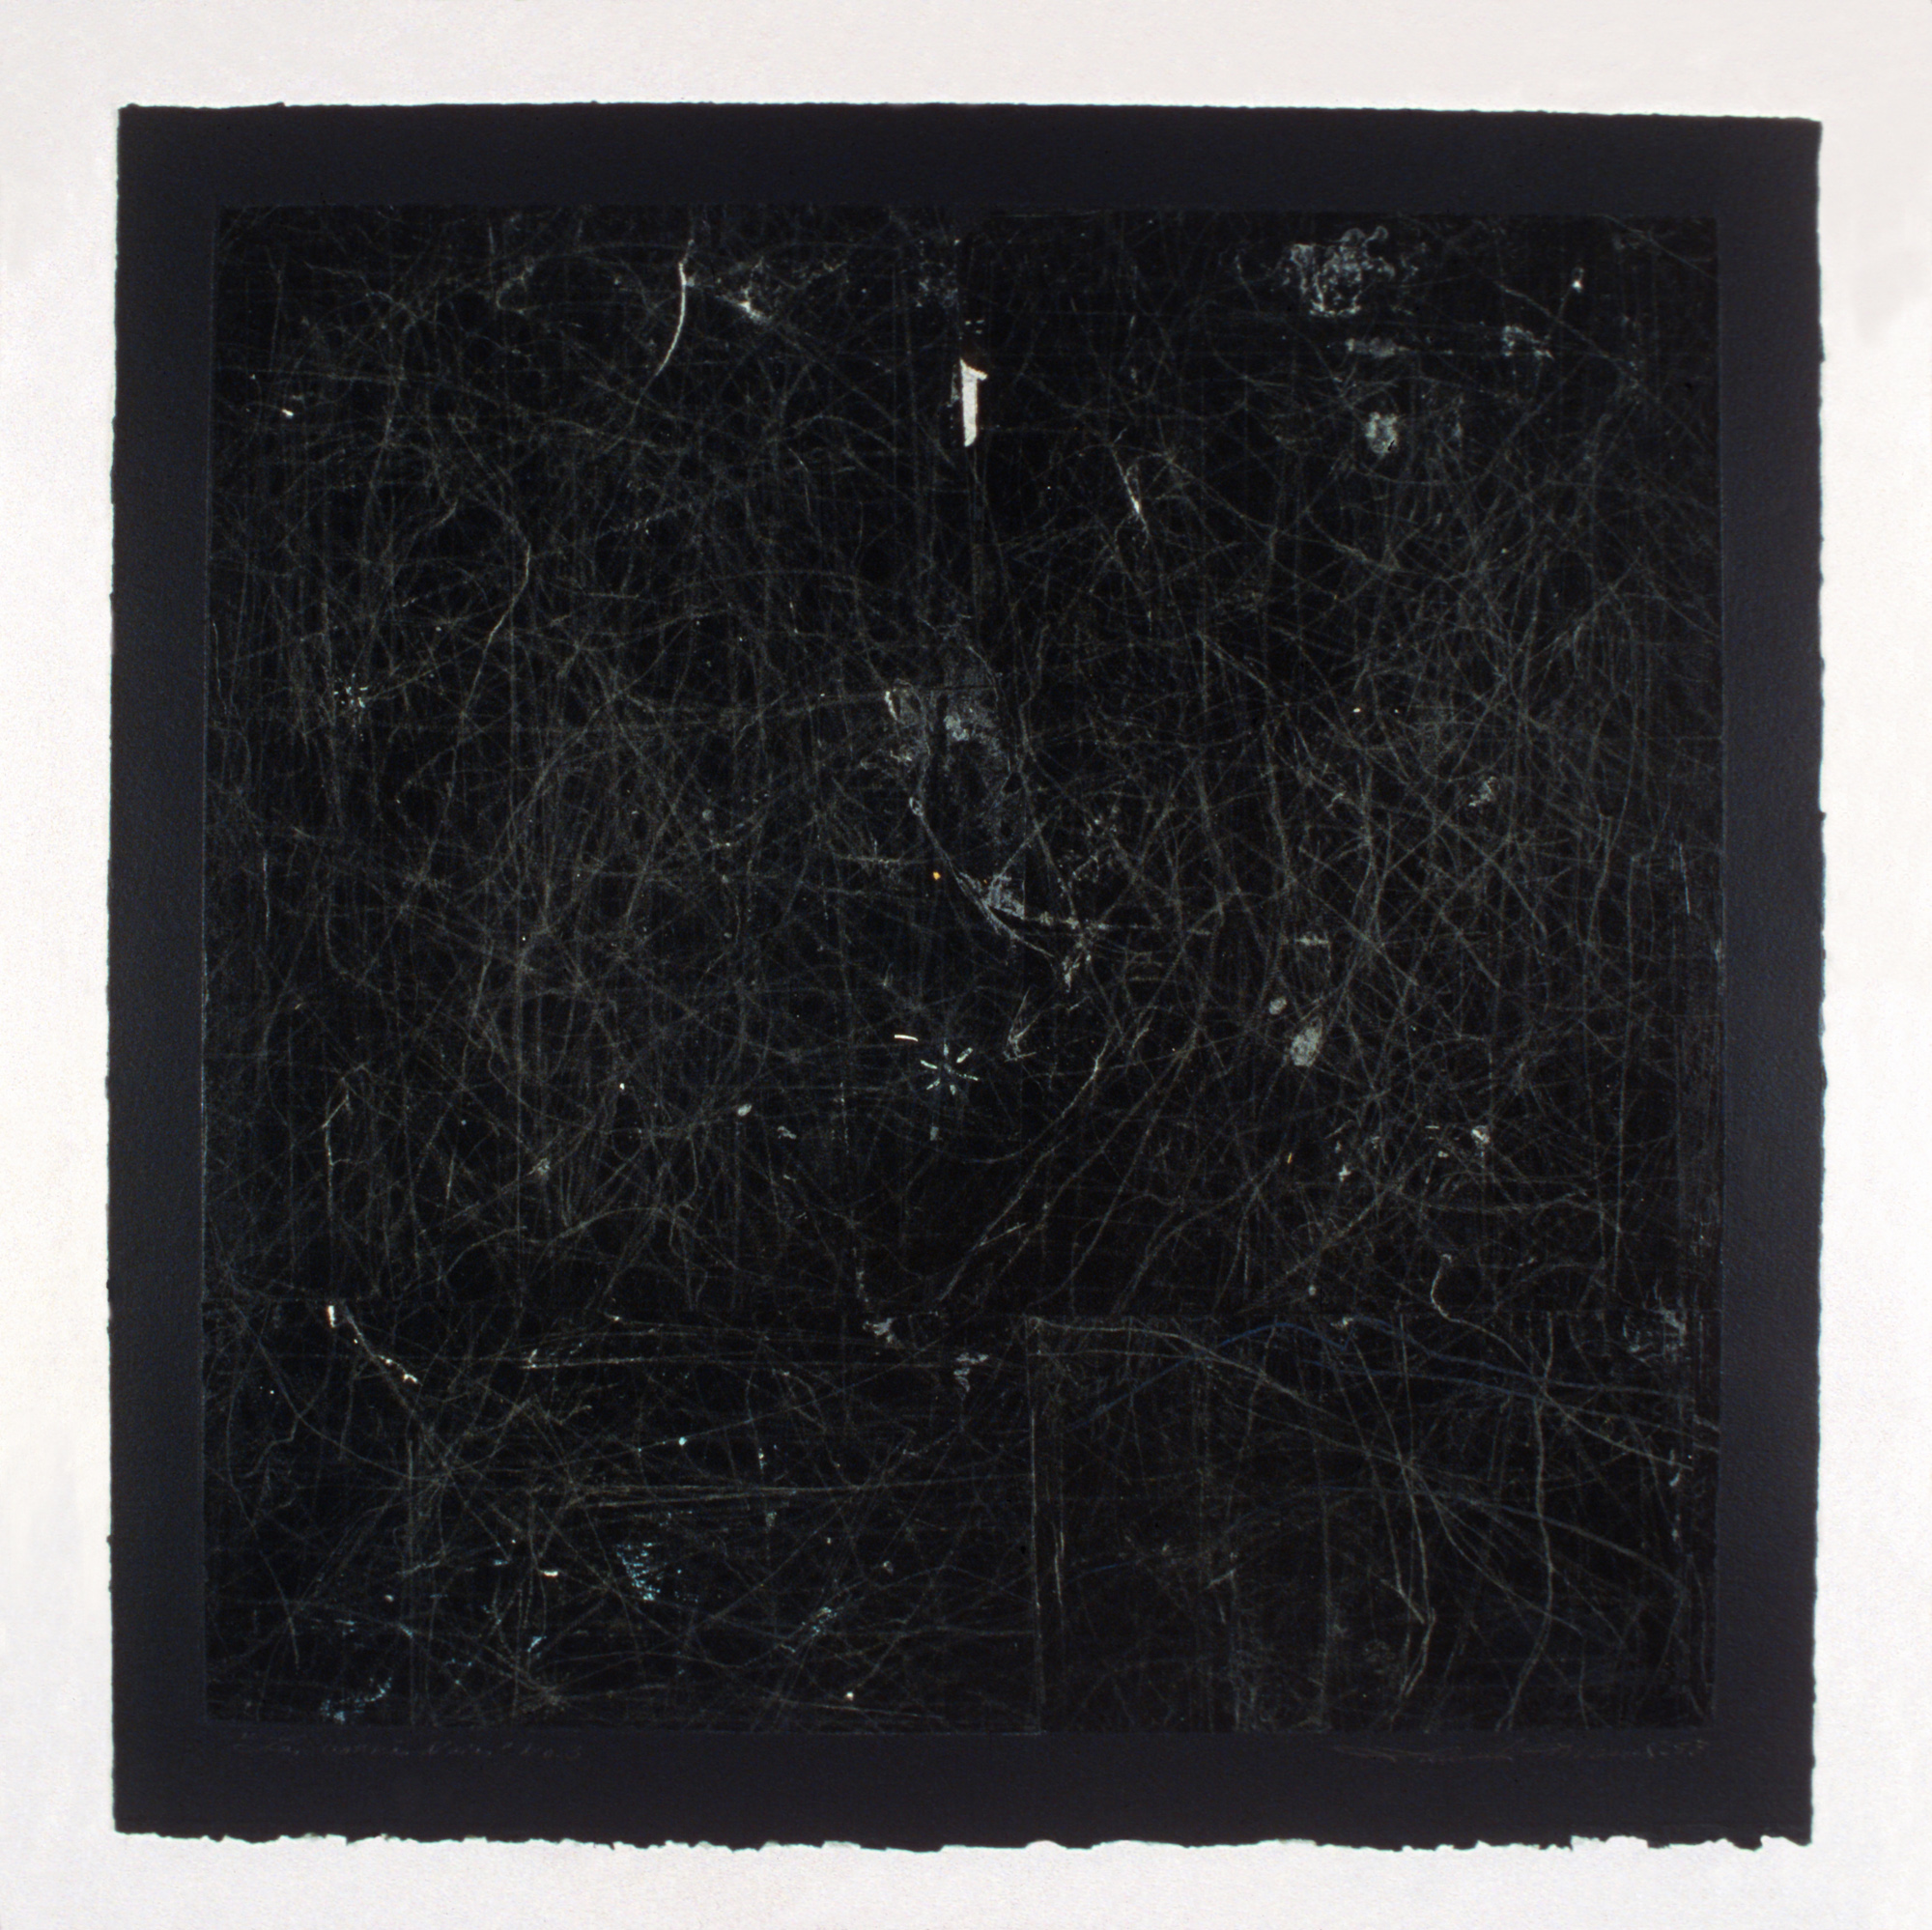 Les carrés noirs no 3, 1998. Gouache and pencil on carbon paper, 46 x 46 cm.